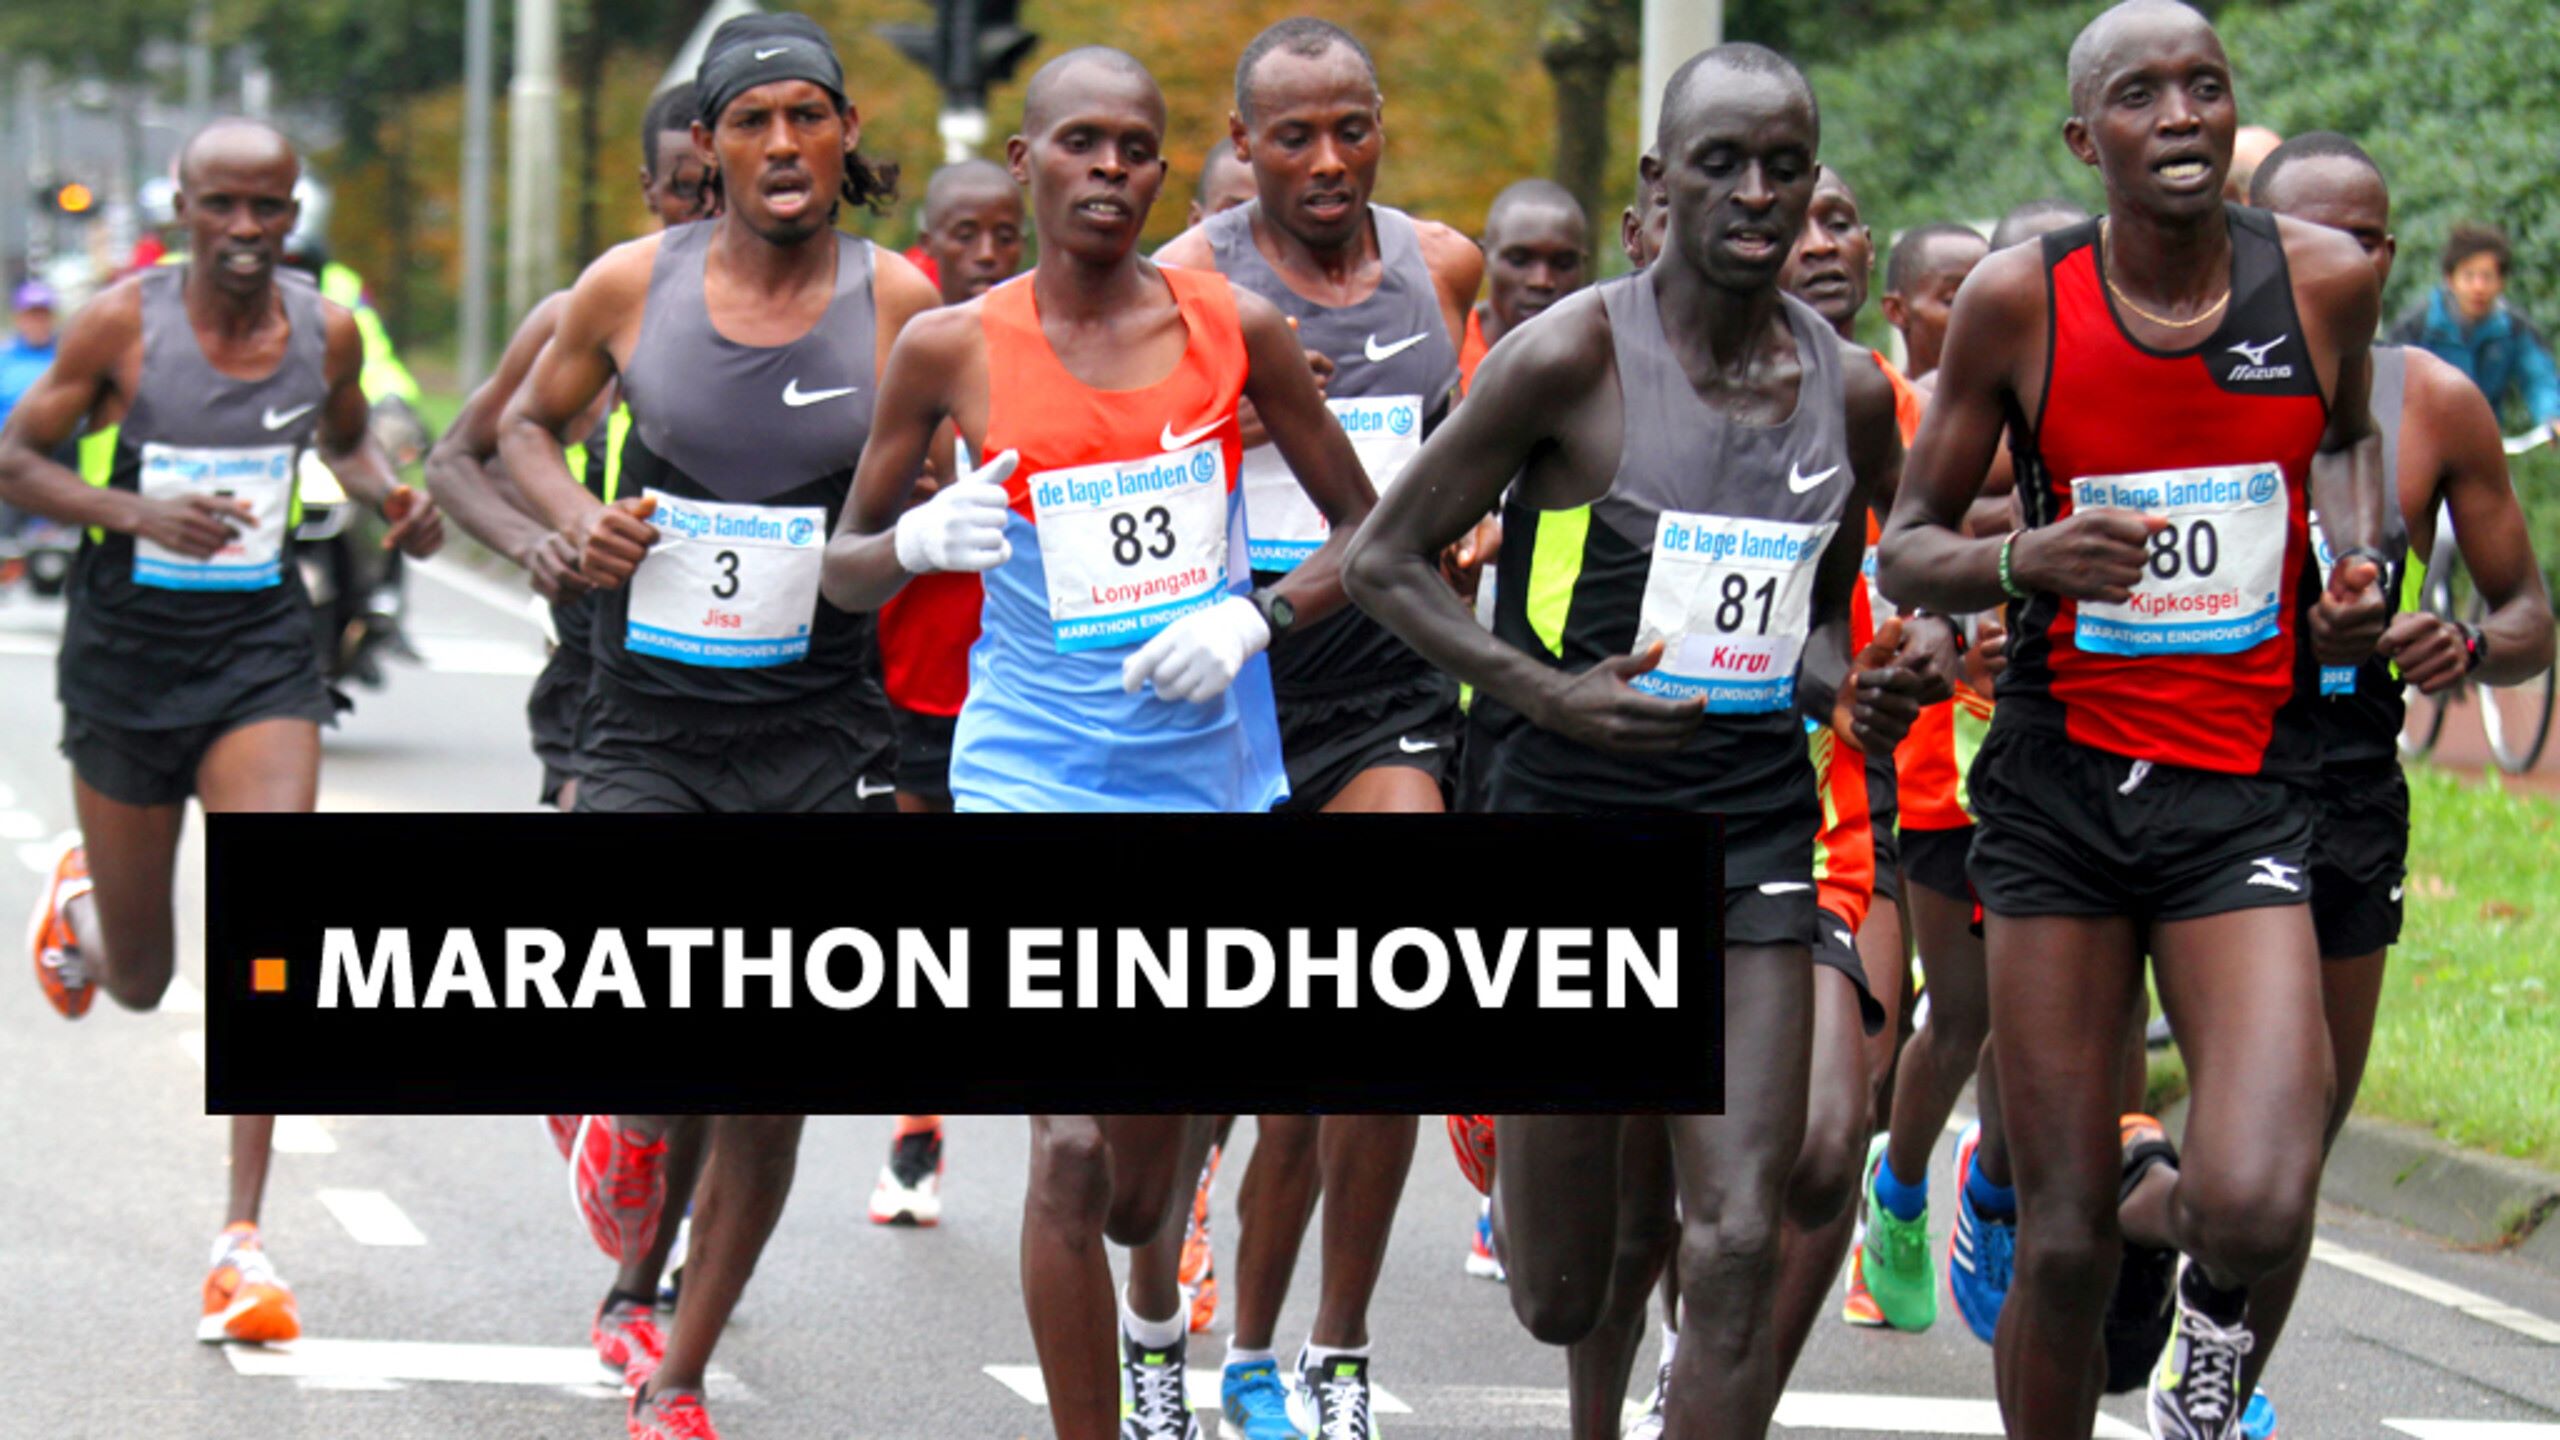 13-facts-about-eindhoven-marathon